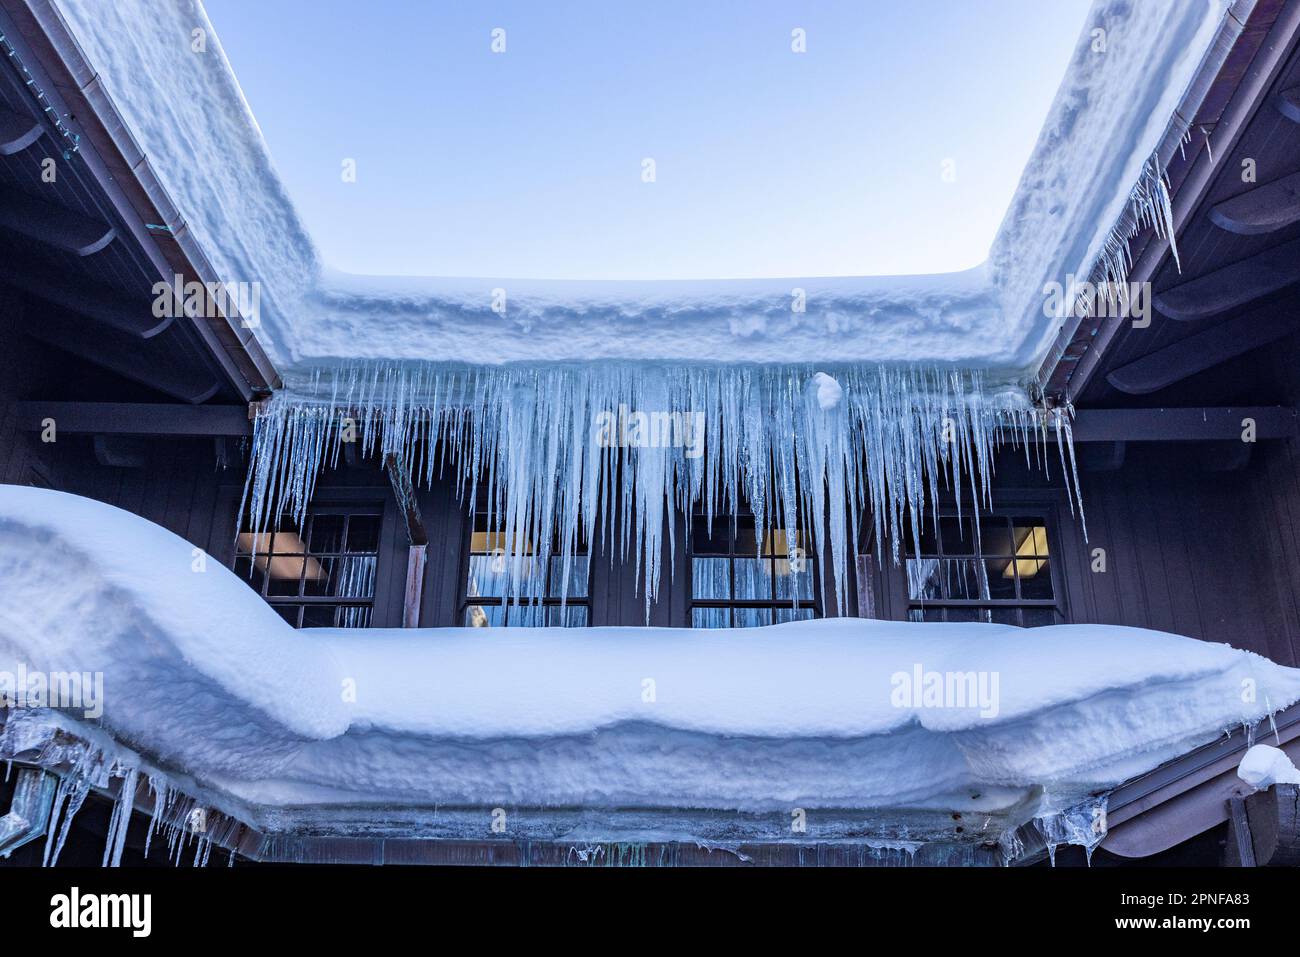 États-Unis, Idaho, Sun Valley, neige et glaces sur le toit Banque D'Images